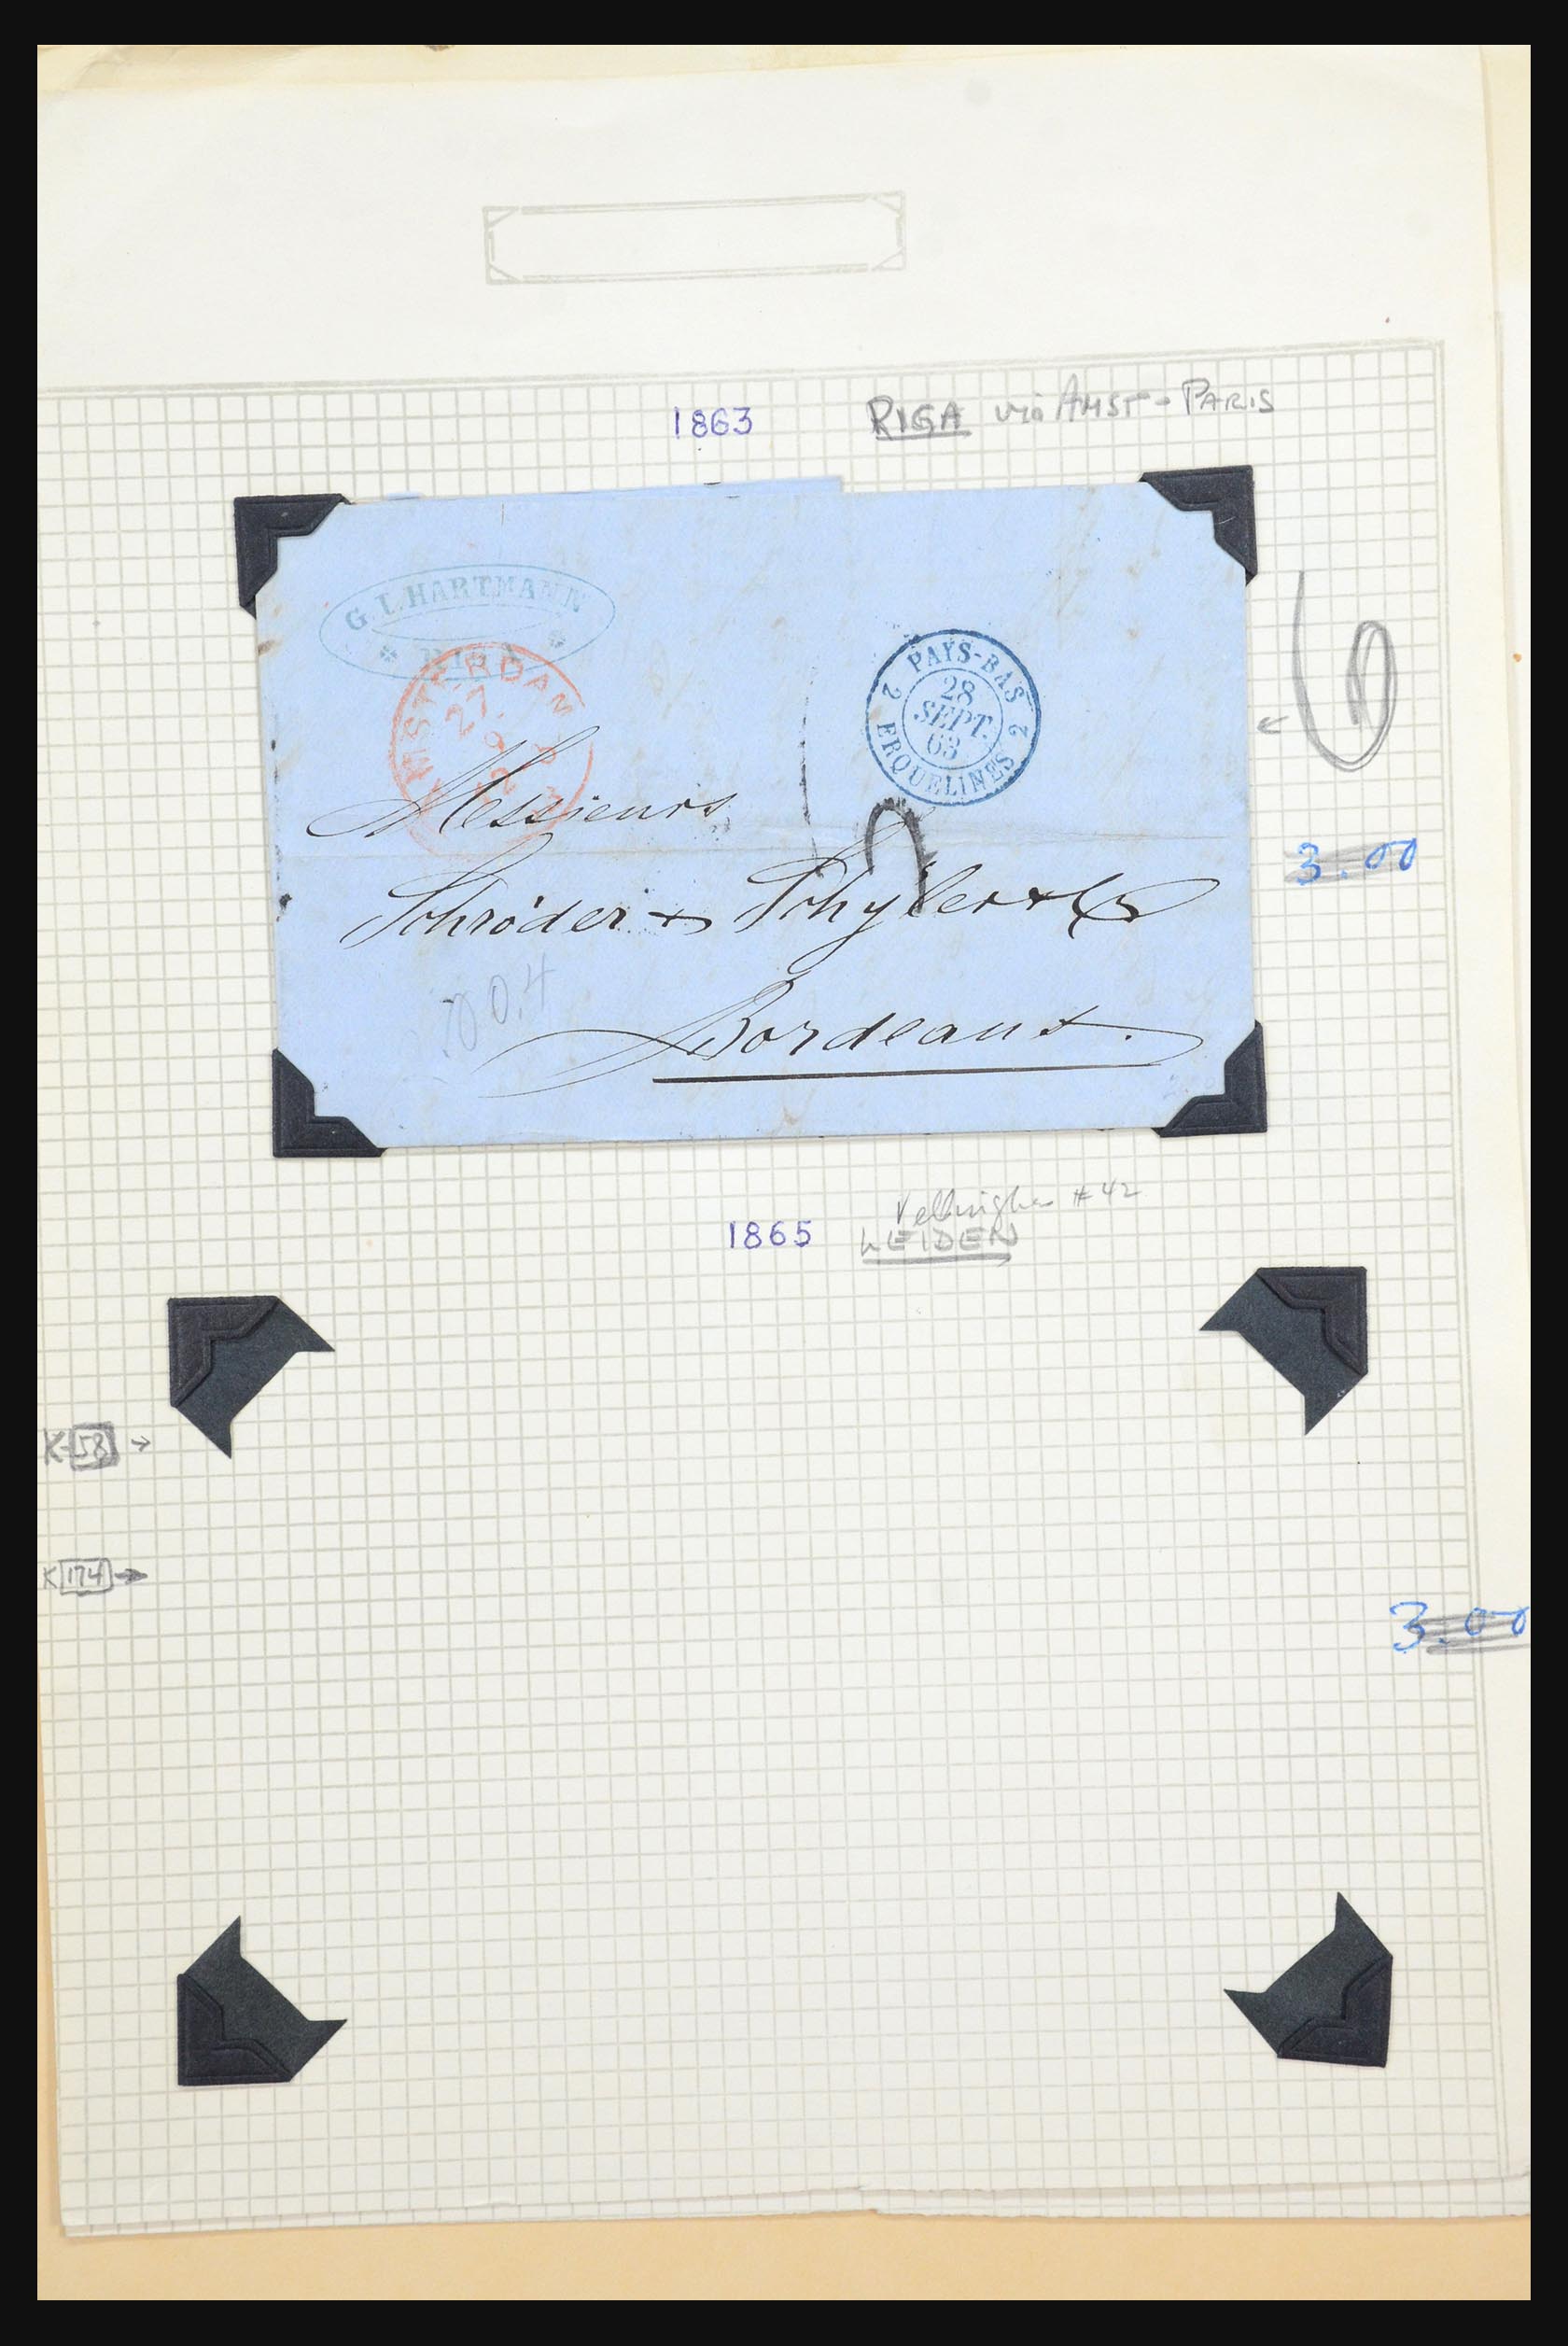 31567 036 - 31567 Nederland brieven 1687-1869.